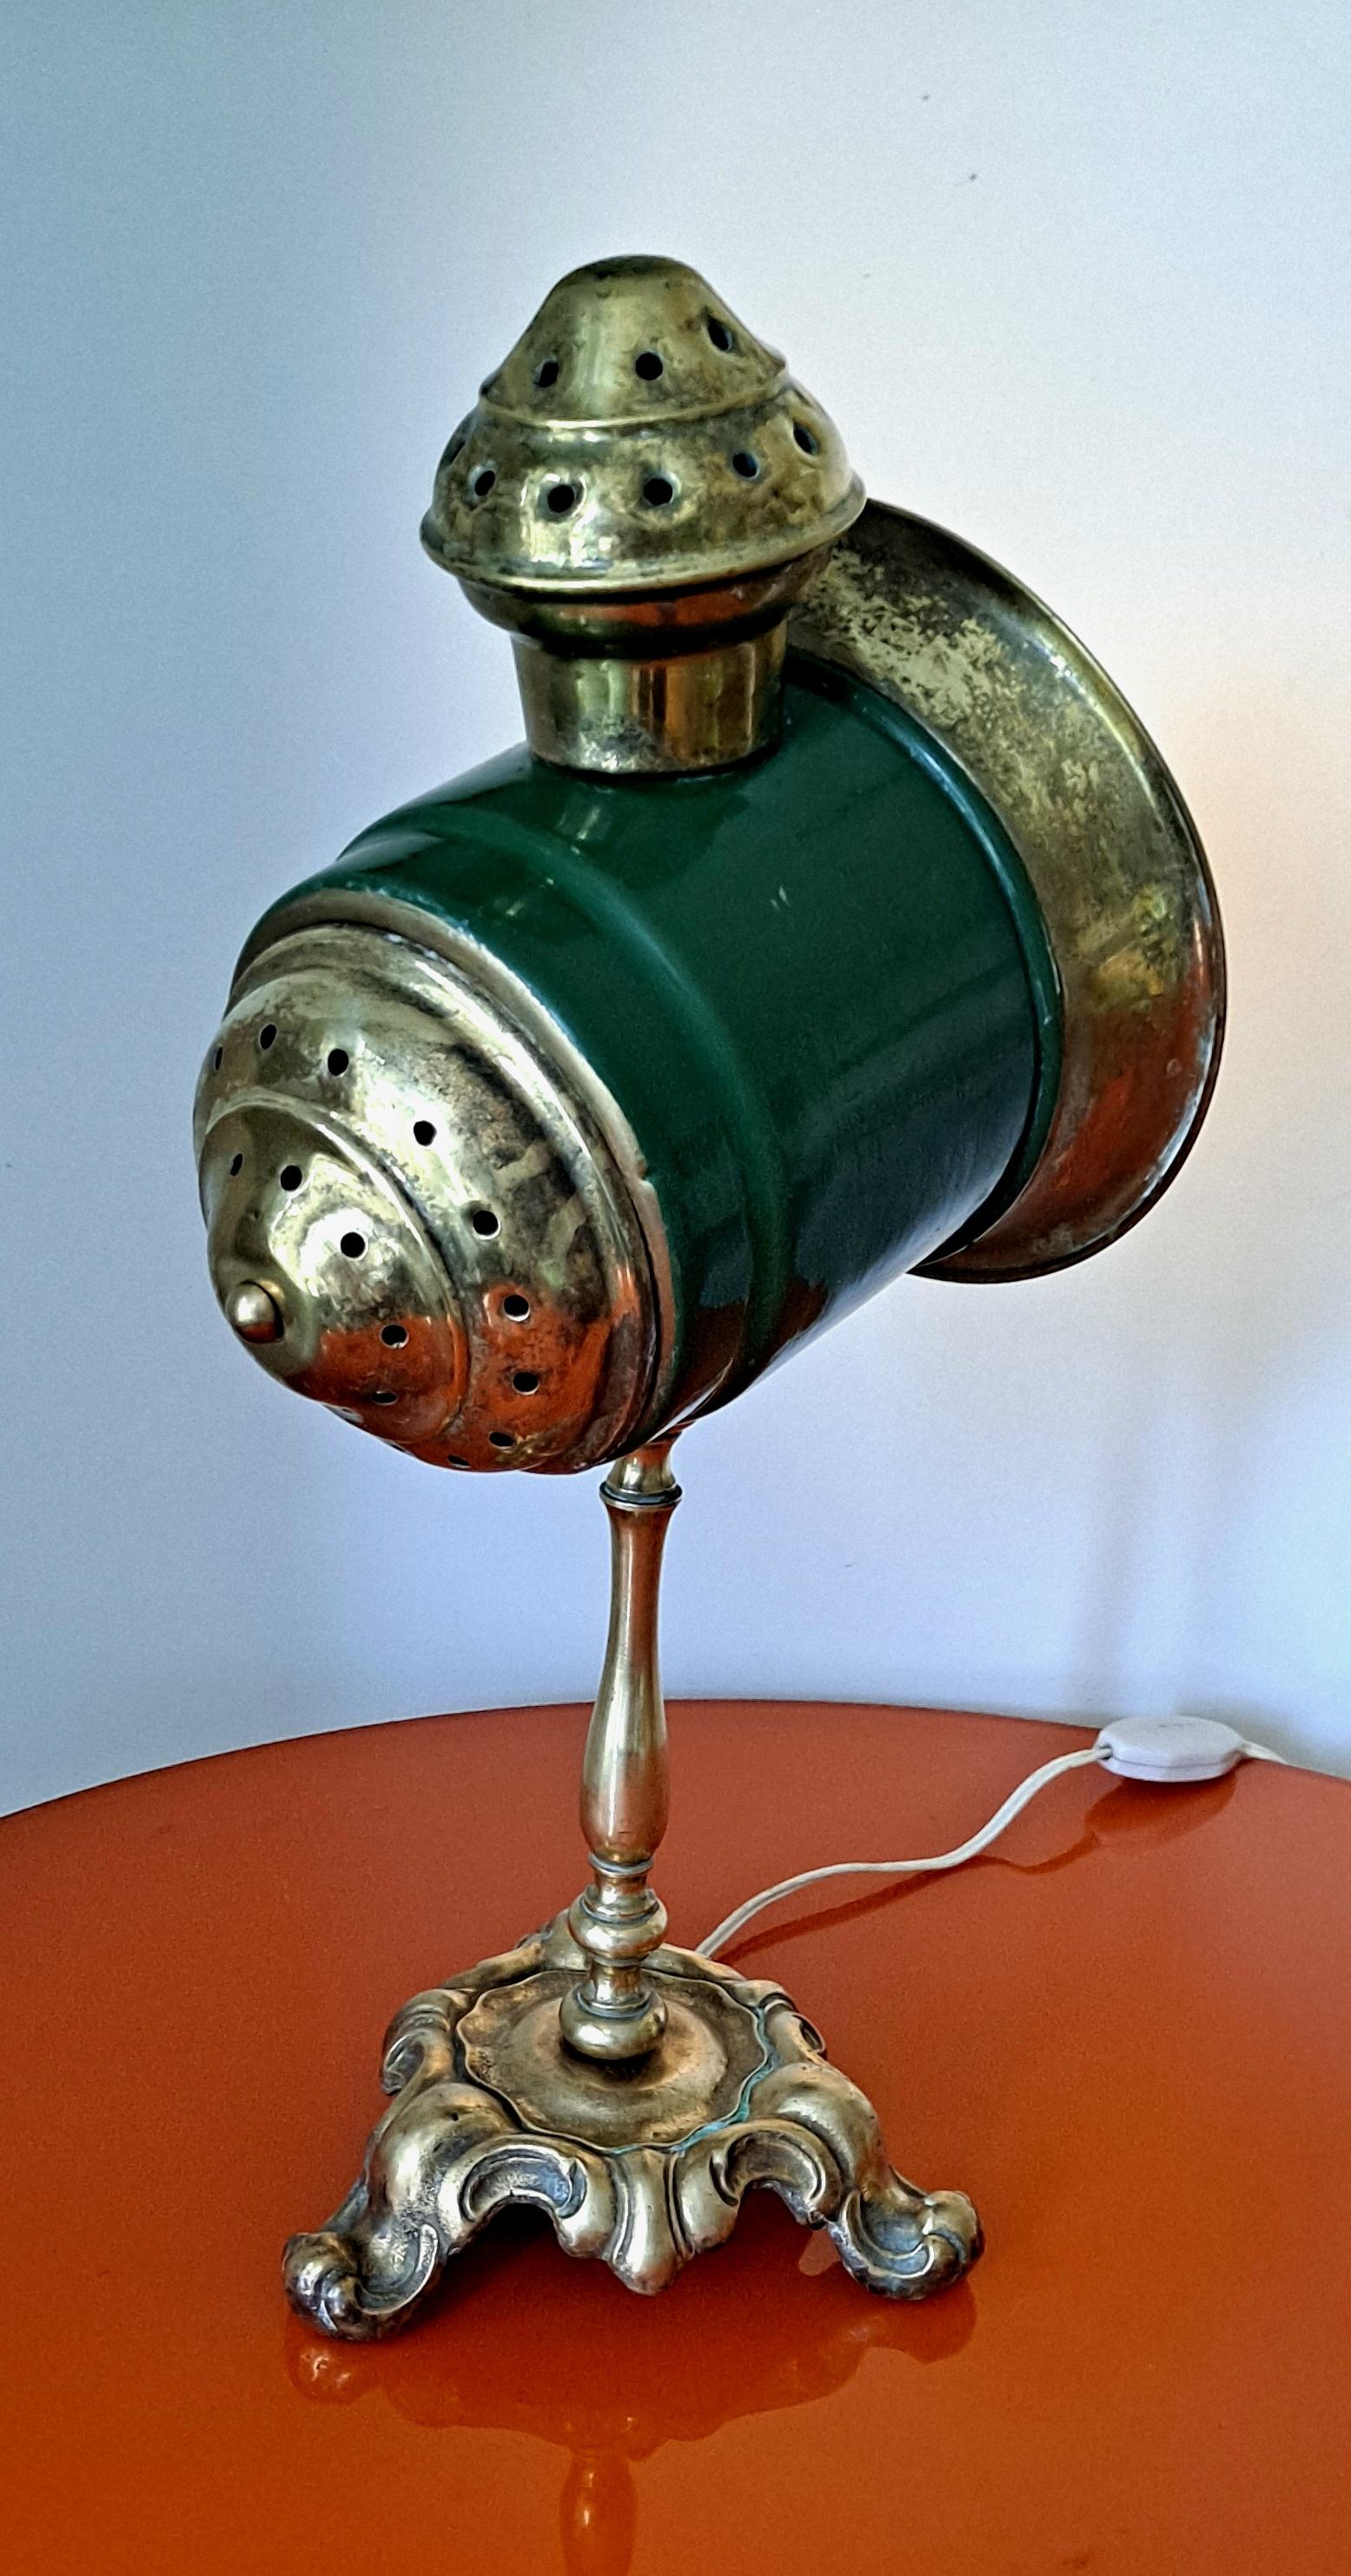 Antike italienische Tischlampe in der 1900 s wie die Kutsche Spot-Licht arbeiten auf dem Erdöl verwendet. Lampe haben die Murano-Glas hinter der Birne zu enormen Spot-Licht zu produzieren  für die Reisenden.
 Ich empfehle Glühbirnen, die nicht mehr